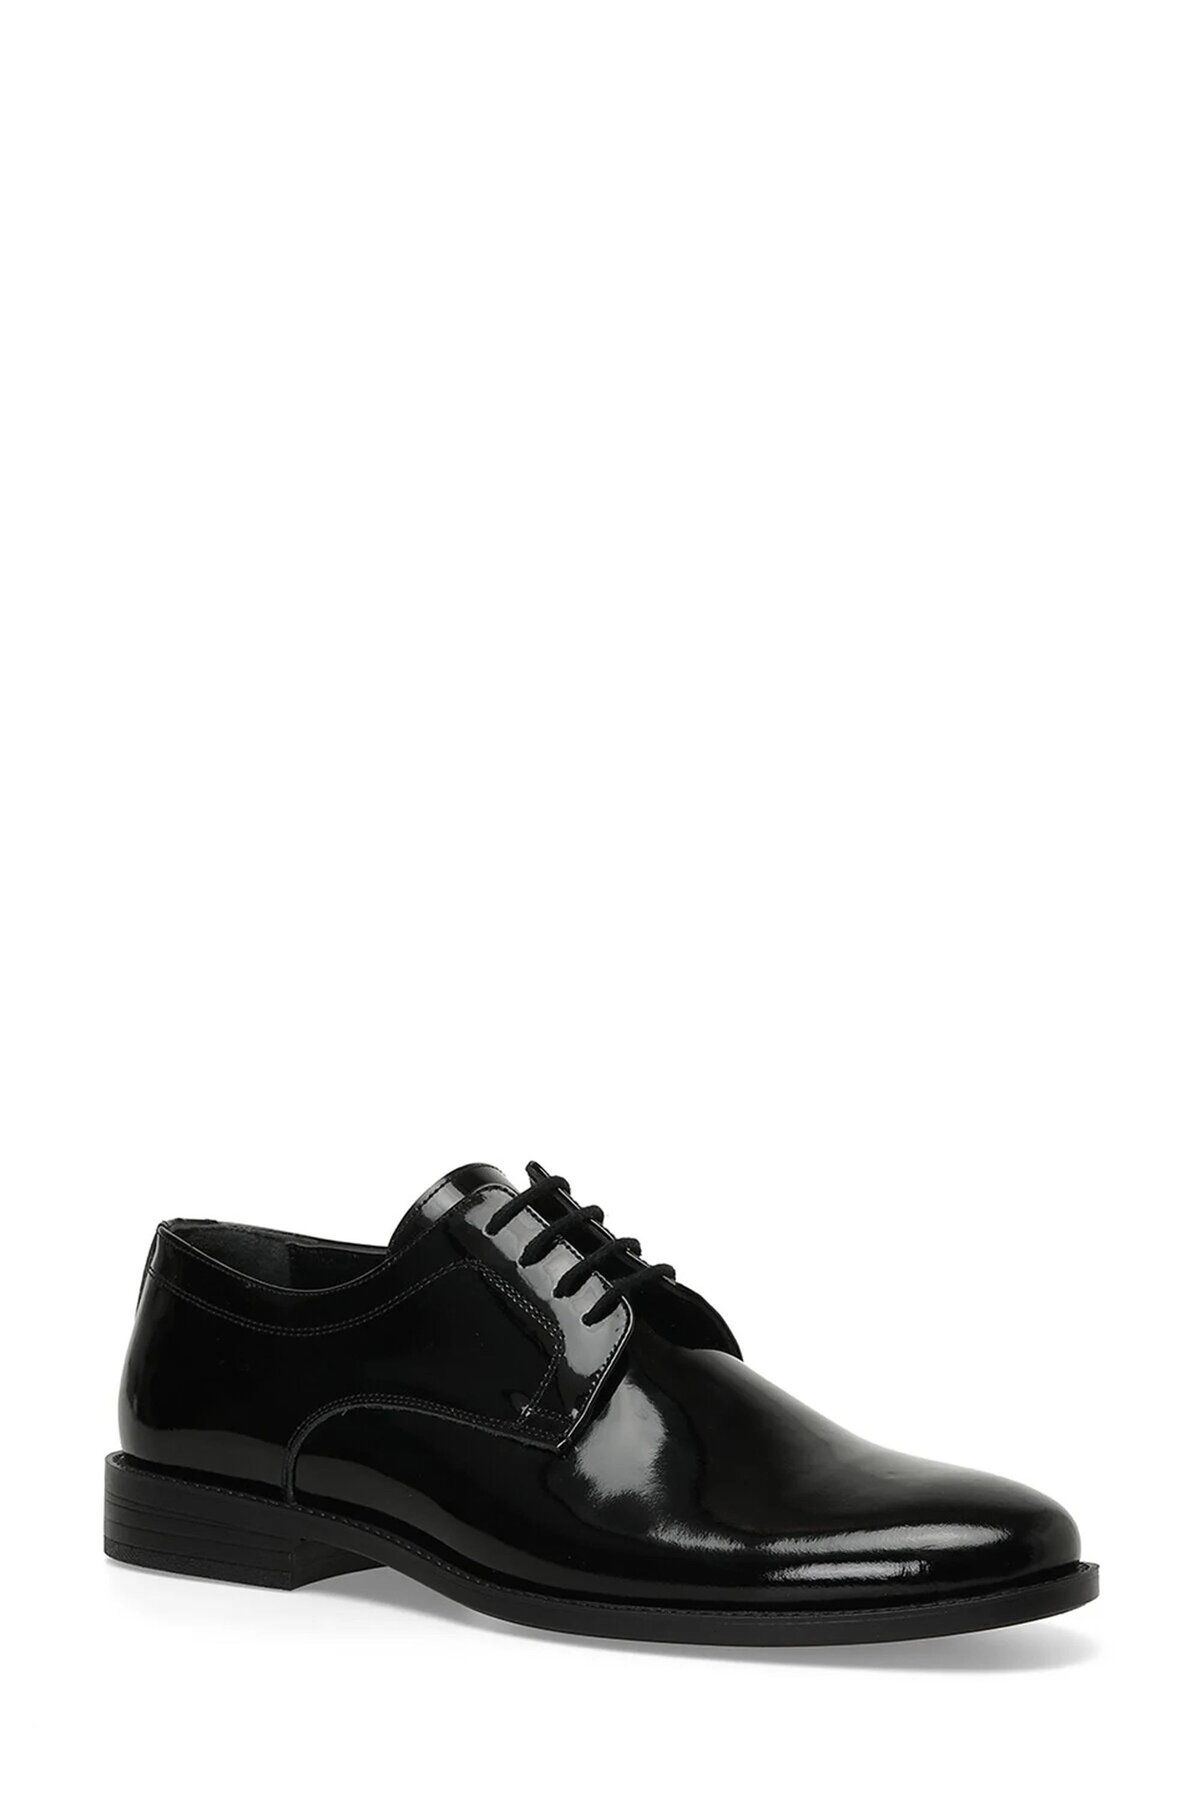 İnci A10154452708010 4p Best R 4fx Siyah Erkek Klasik Ayakkabı